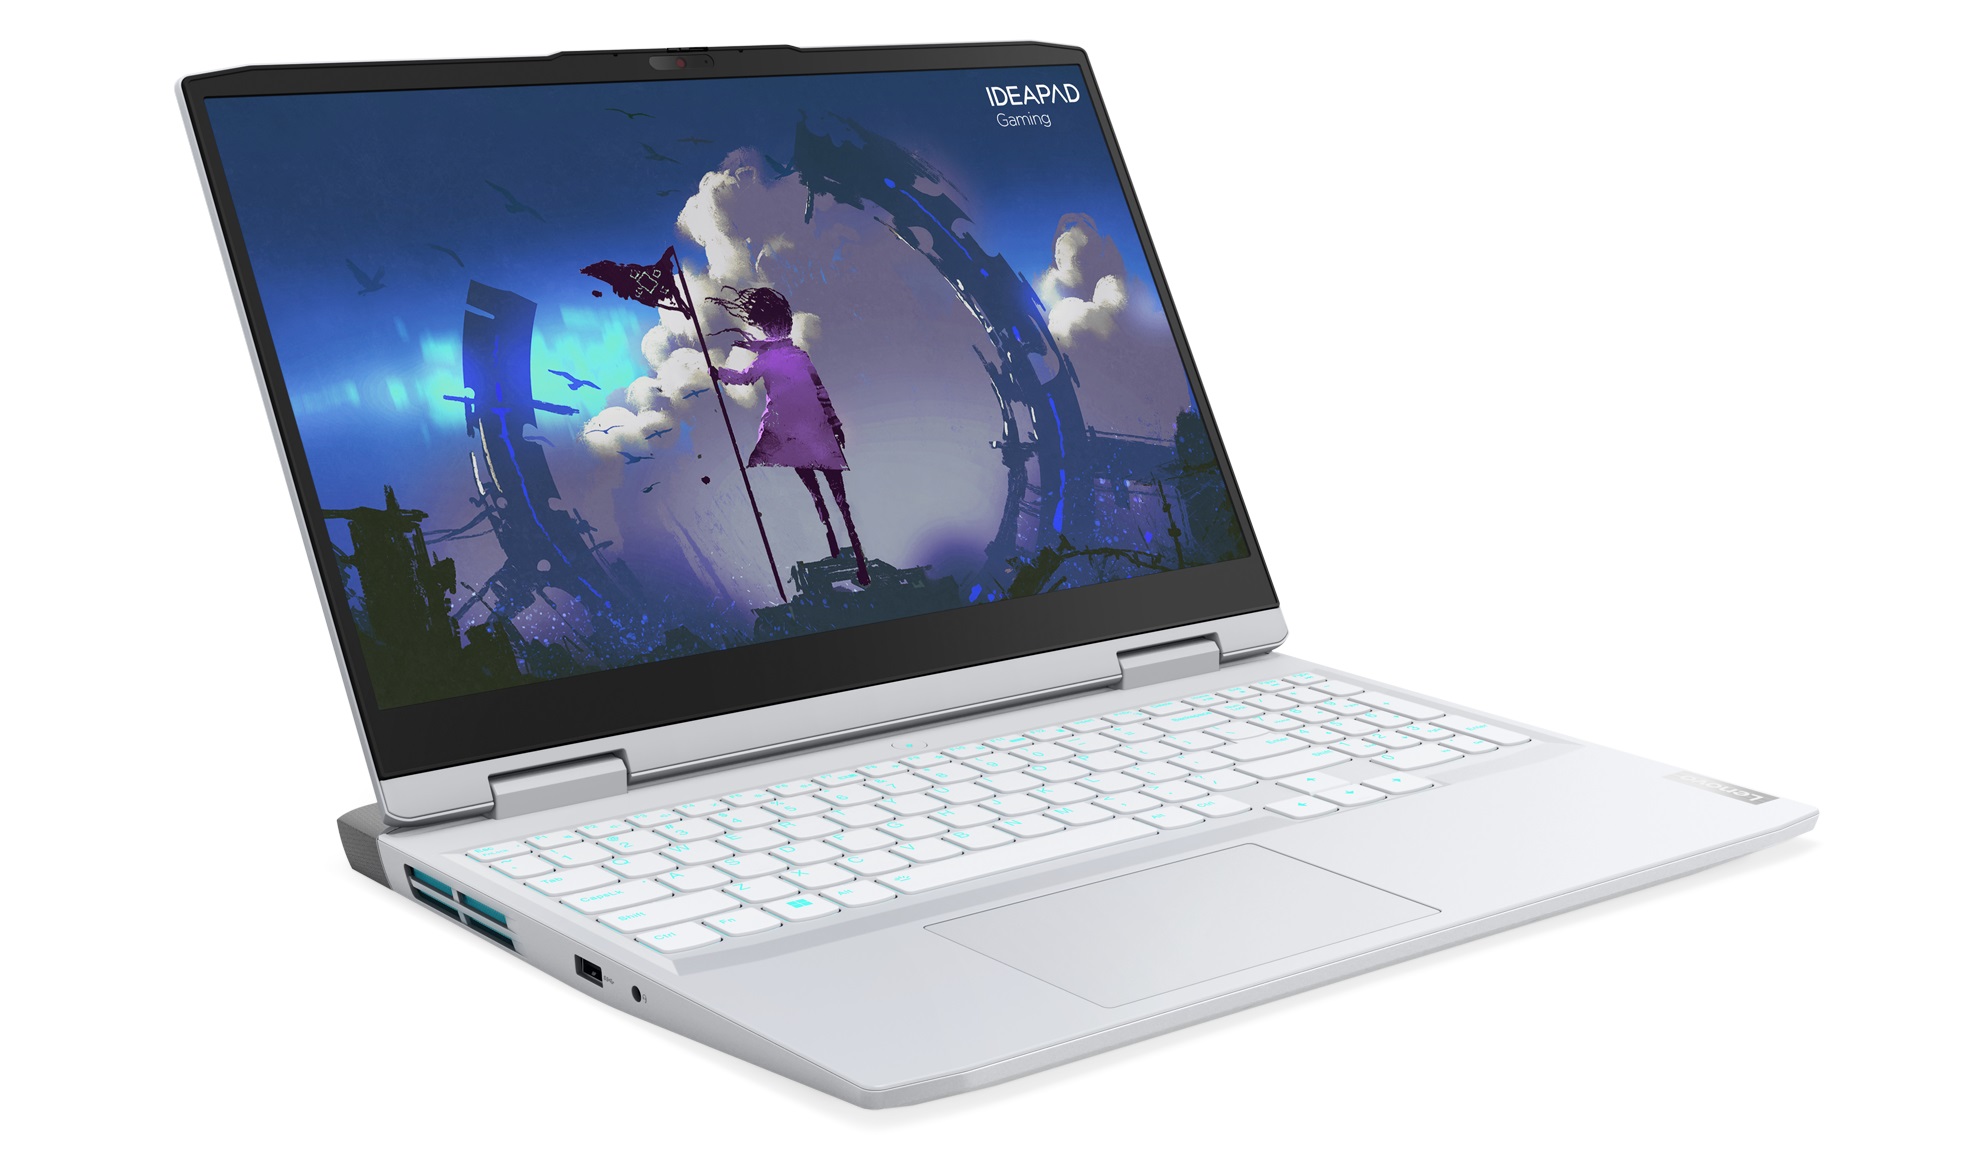 Lenovo lança notebook gamer com tela de 165 Hz em versões AMD e Intel